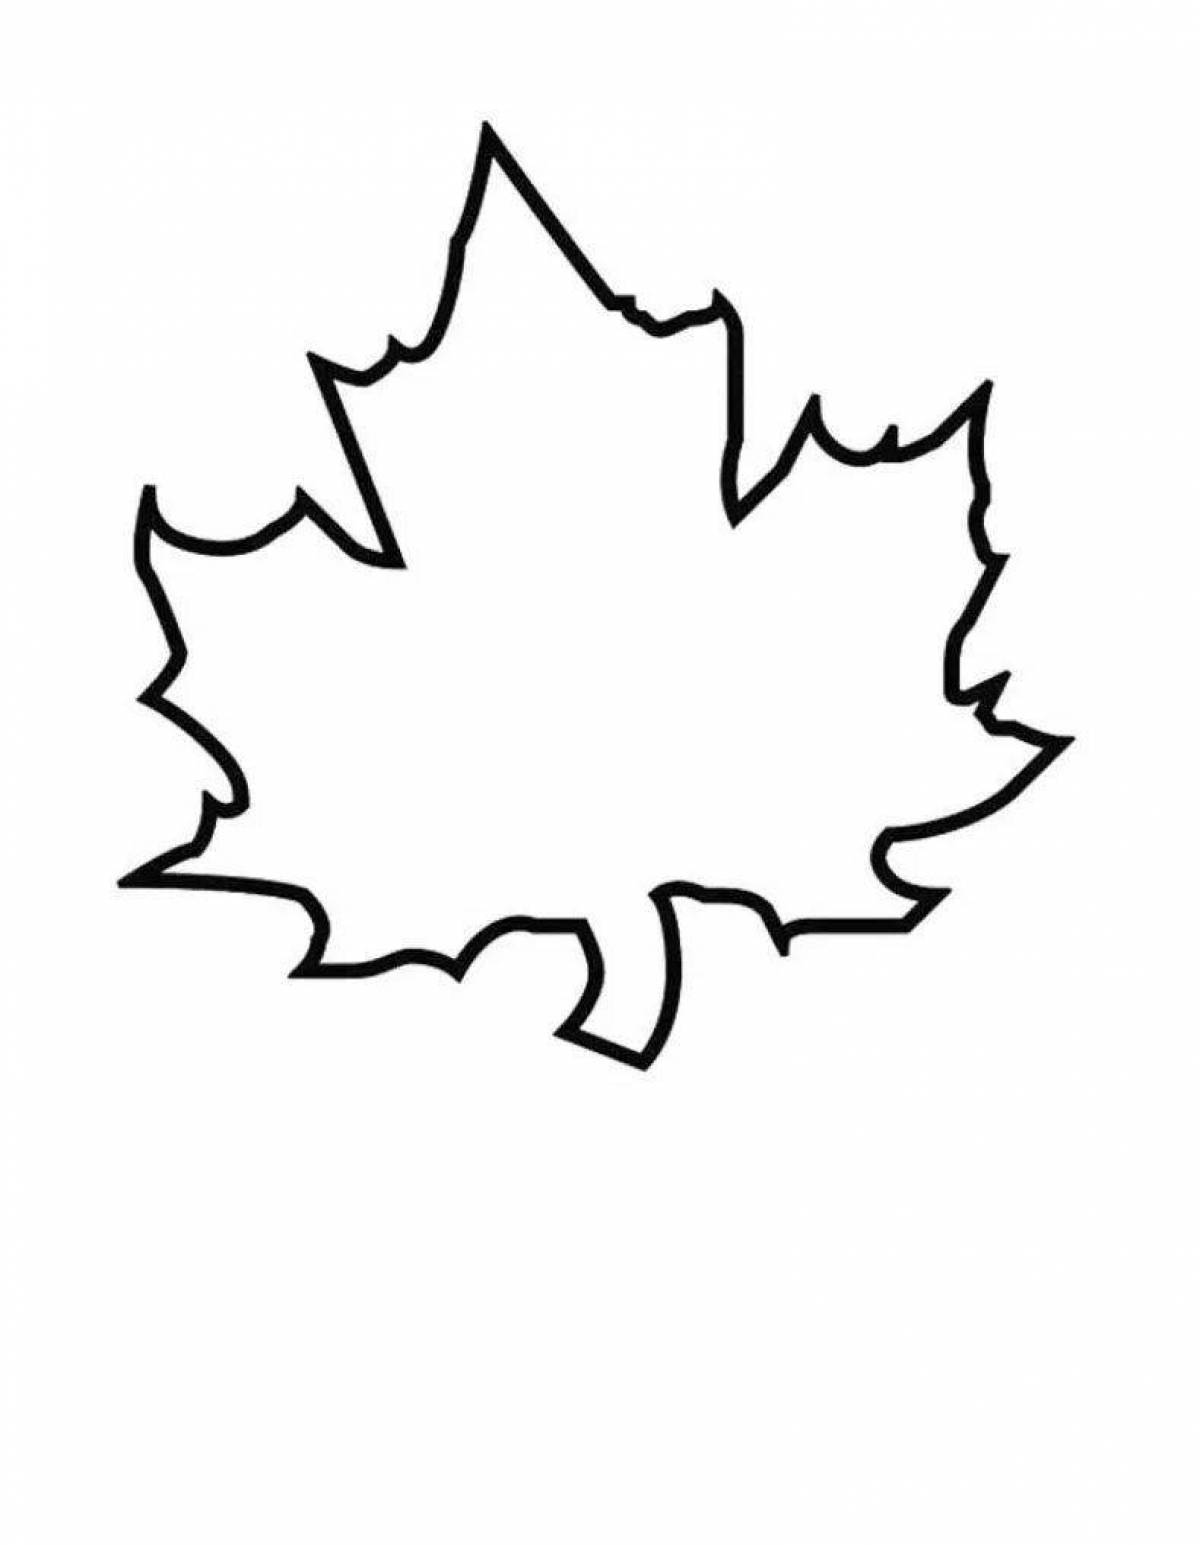 Maple leaf #2